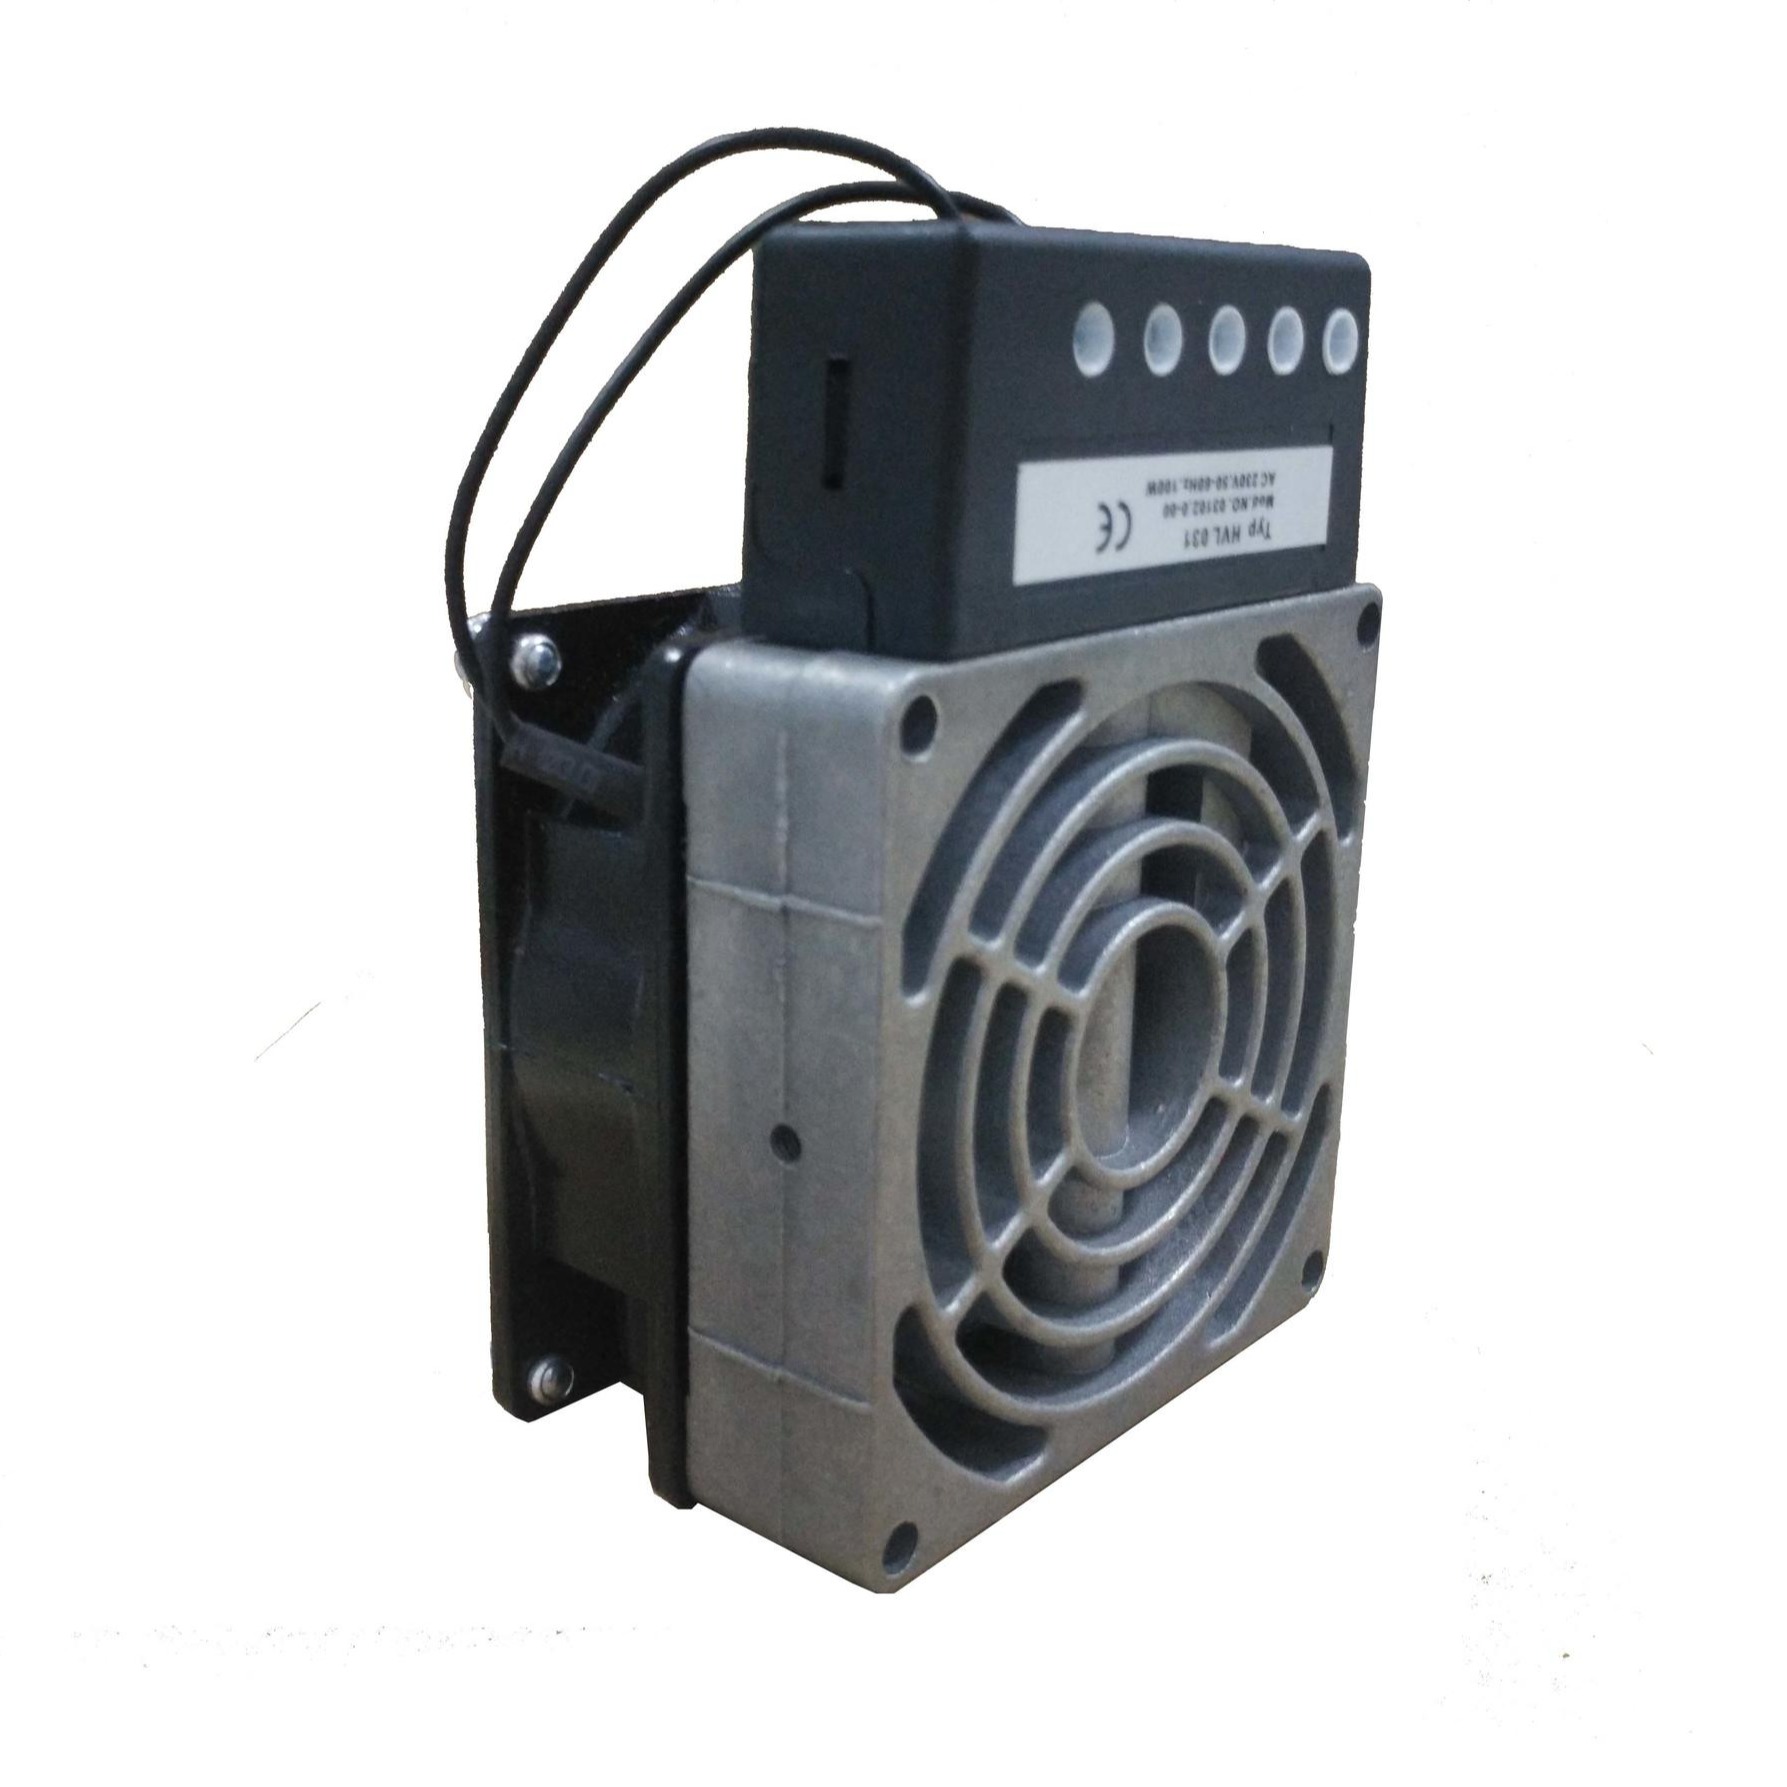 充电桩加热器 变频器控制柜加热器 机柜除湿加热器 HVL031加热器 舍利弗CEREF